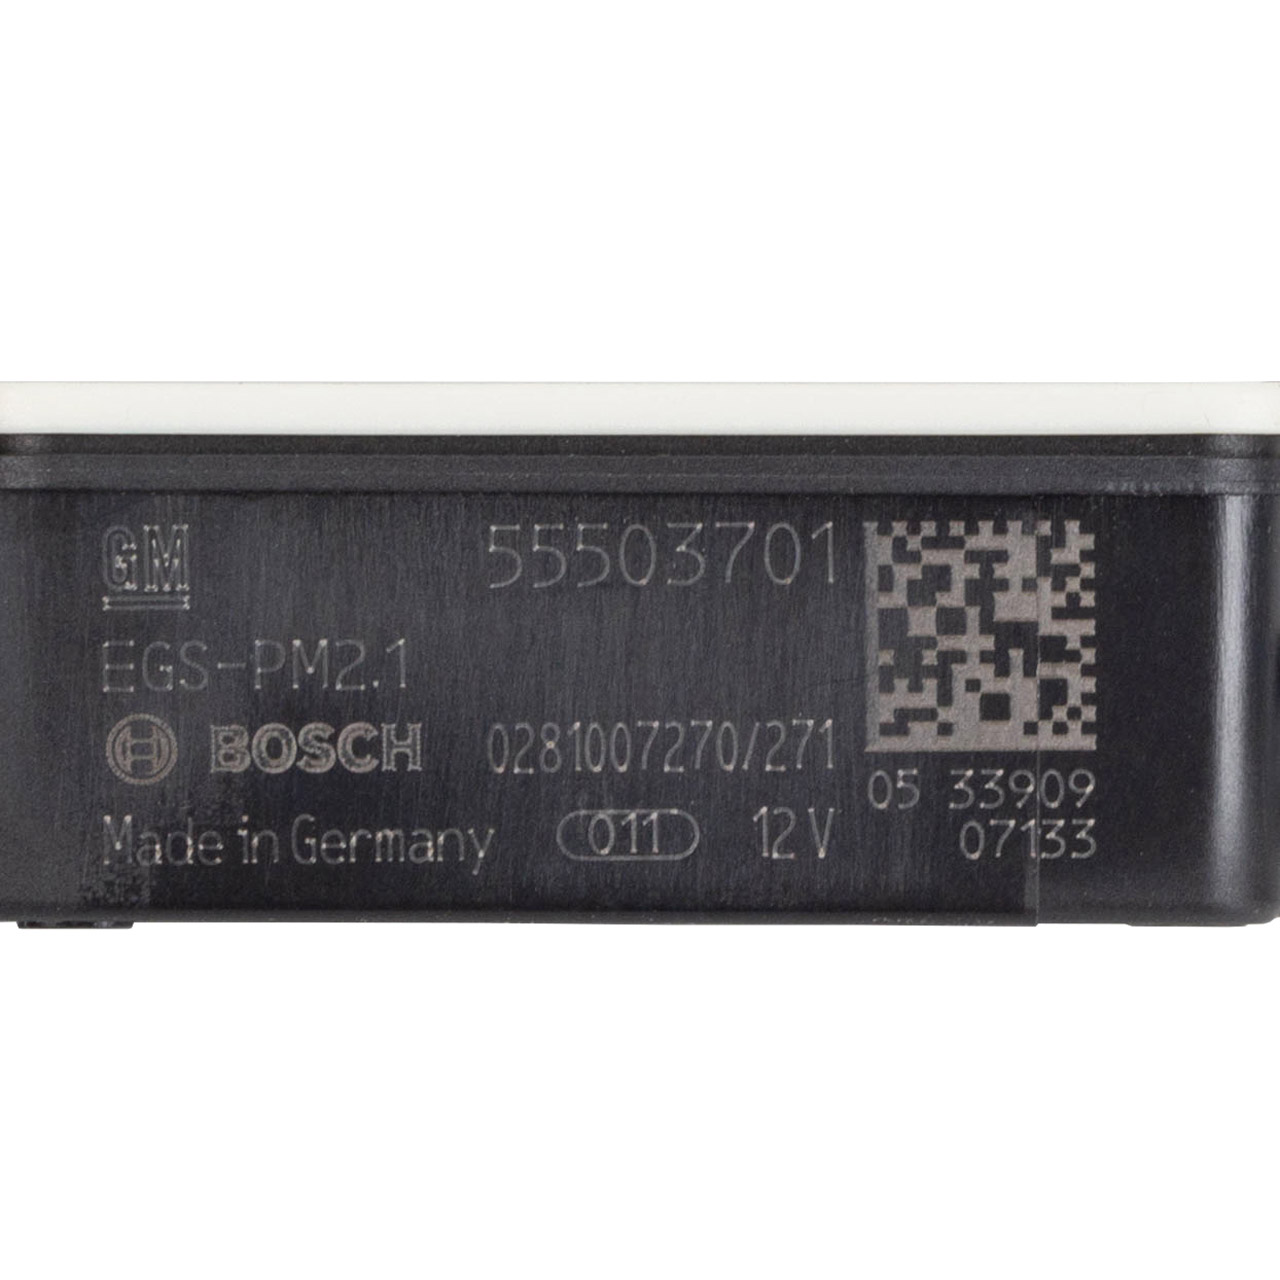 NOx-Sensor Abgassensor für OPEL Insignia B 1.6-2.0 CDTI/GSi 55503701